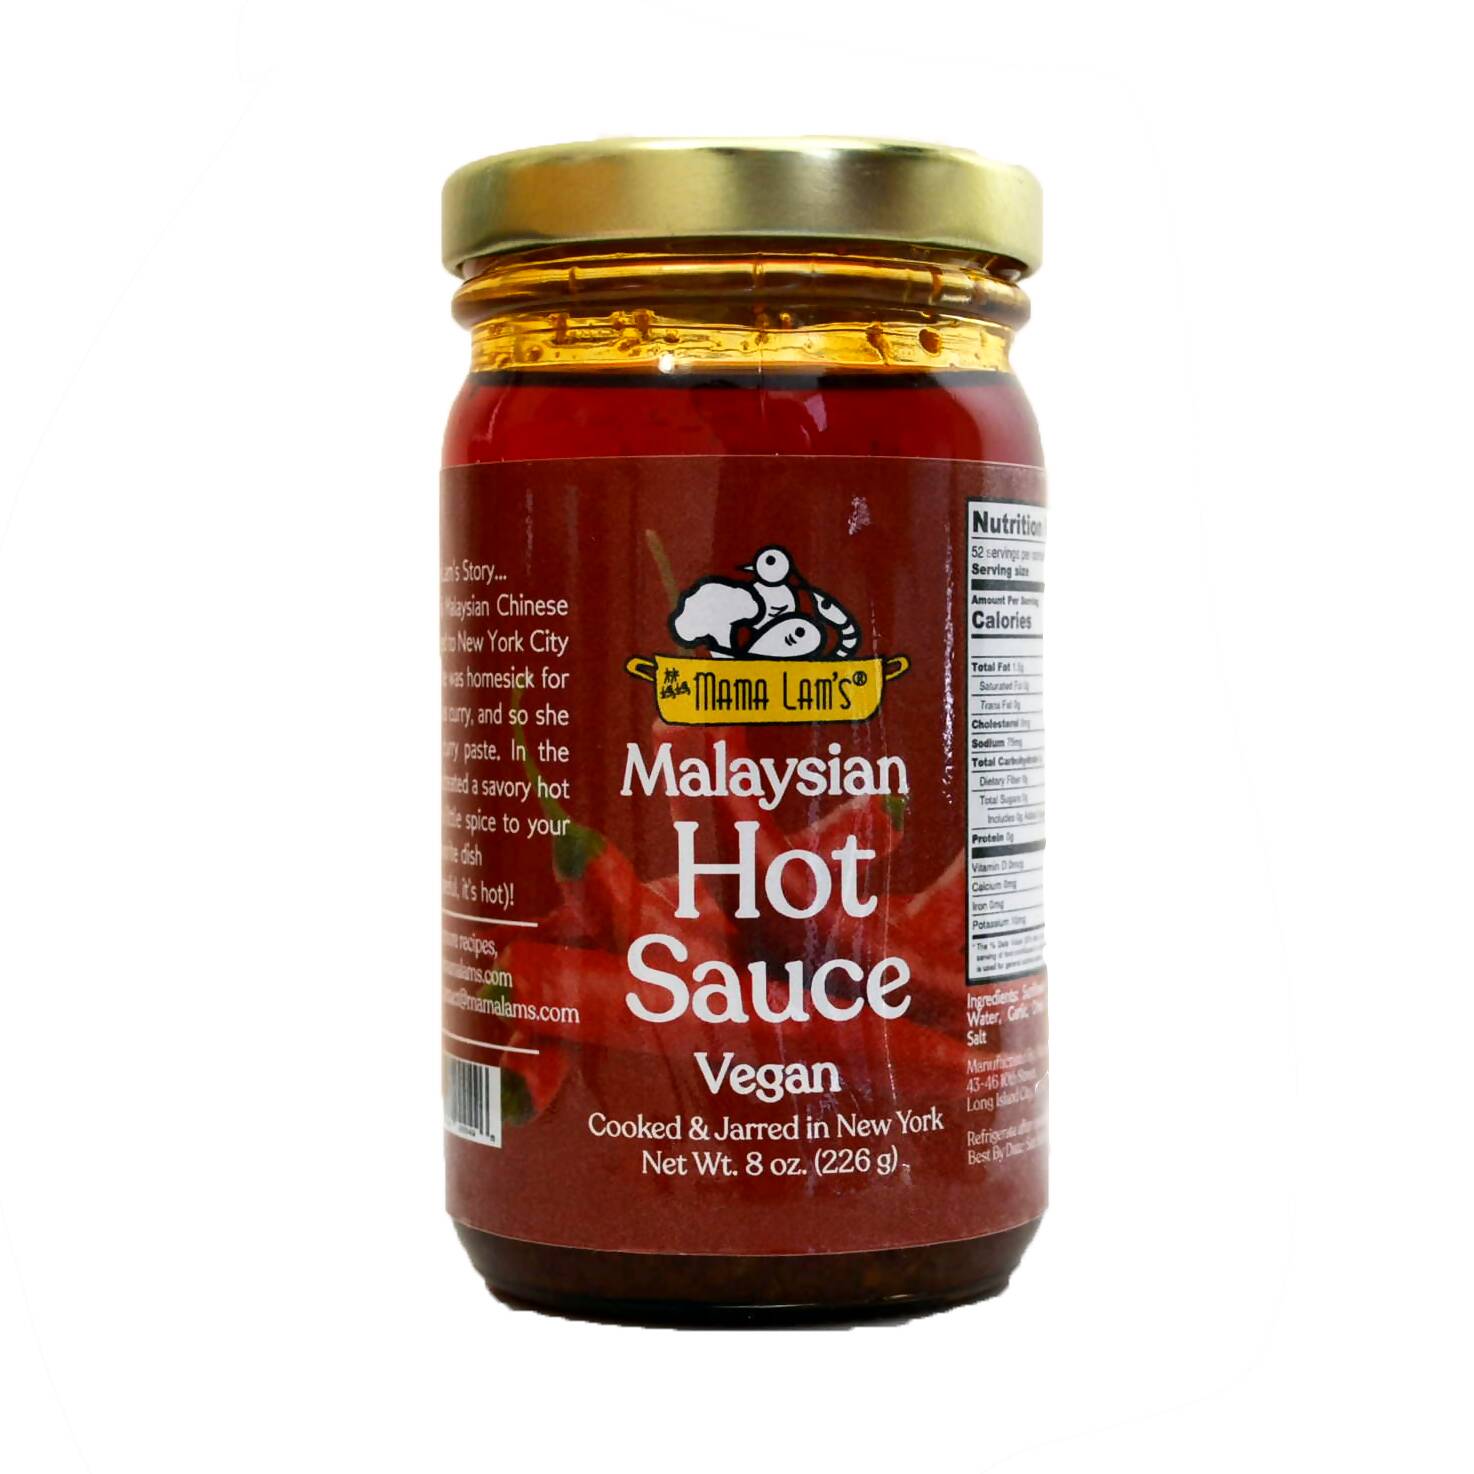 Malaysian Vegan Hot Sauce